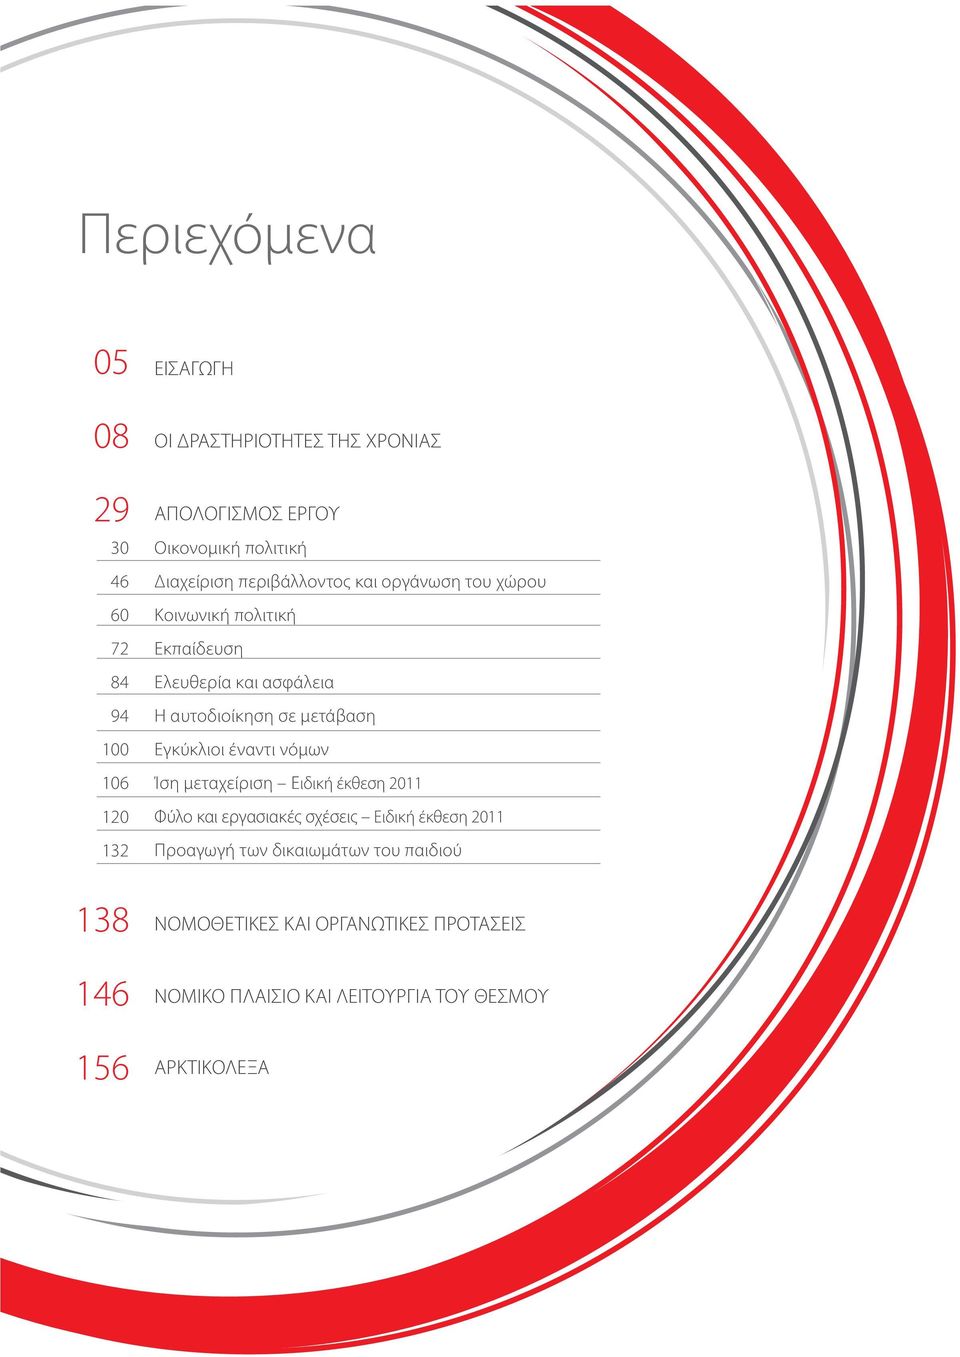 αυτοδιοίκηση σε μετάβαση Εγκύκλιοι έναντι νόμων Ίση μεταχείριση Ειδική έκθεση 2011 Φύλο και εργασιακές σχέσεις Ειδική έκθεση